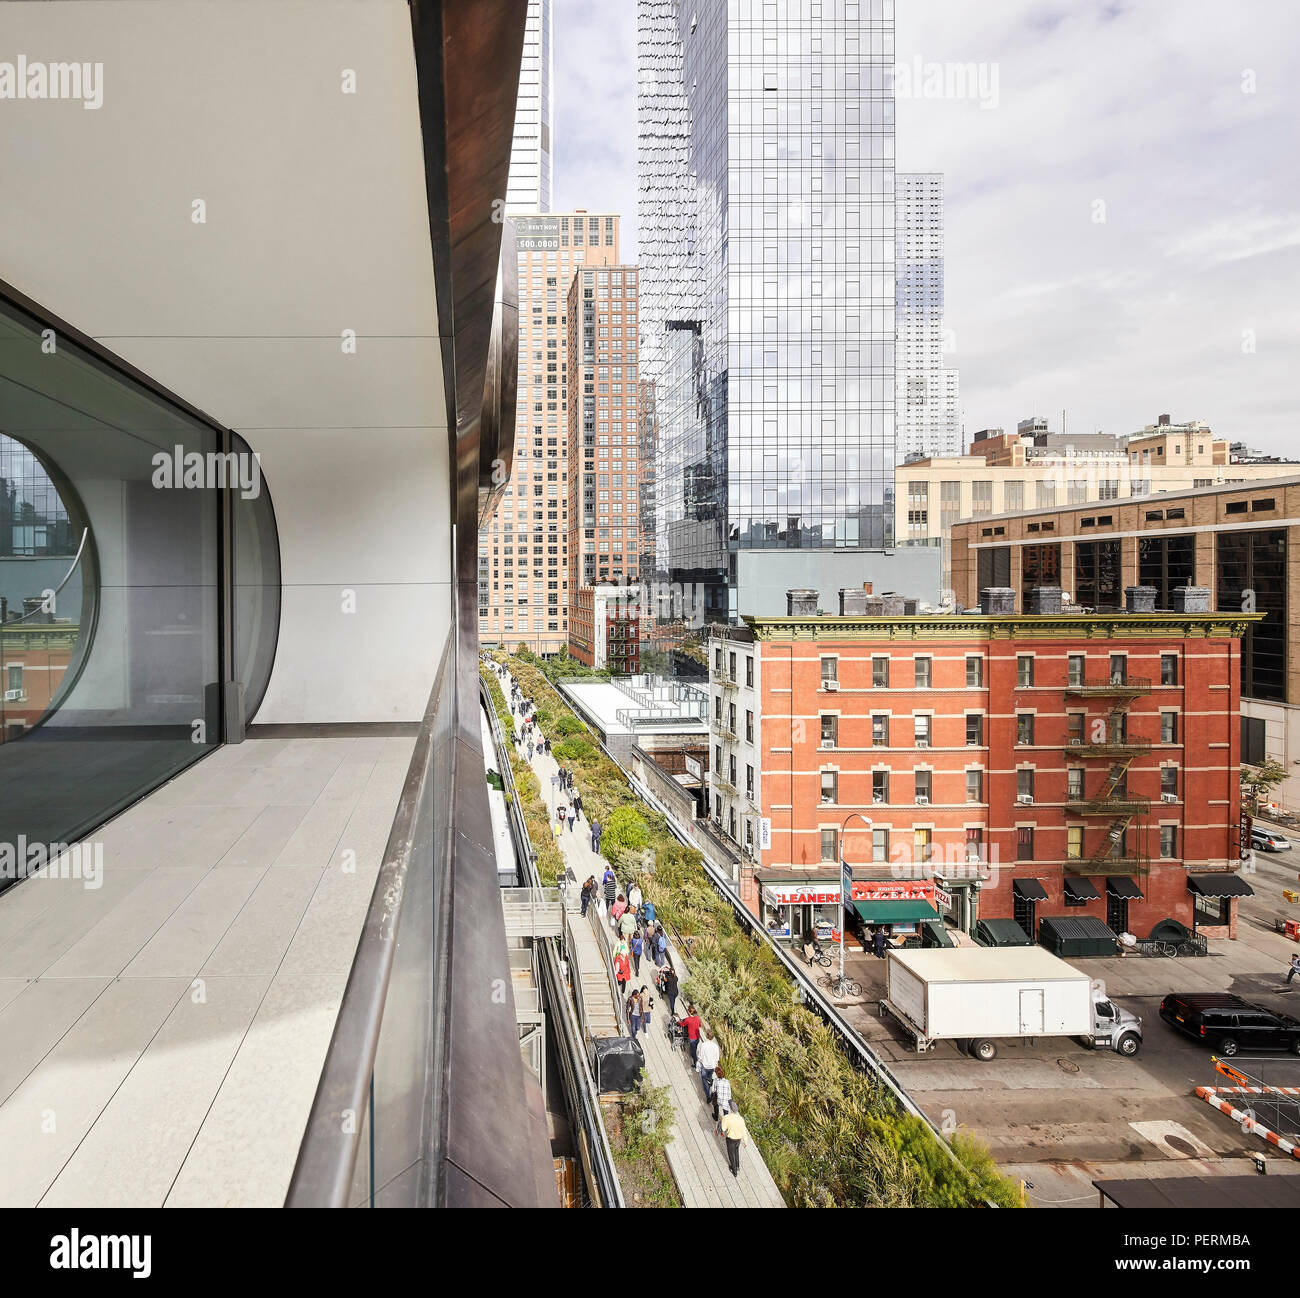 Détail de l'extérieur avec vue sur la ligne haute. 520 West 28th Street, New York, United States. Architecte : Zaha Hadid Architects, 2017. Banque D'Images